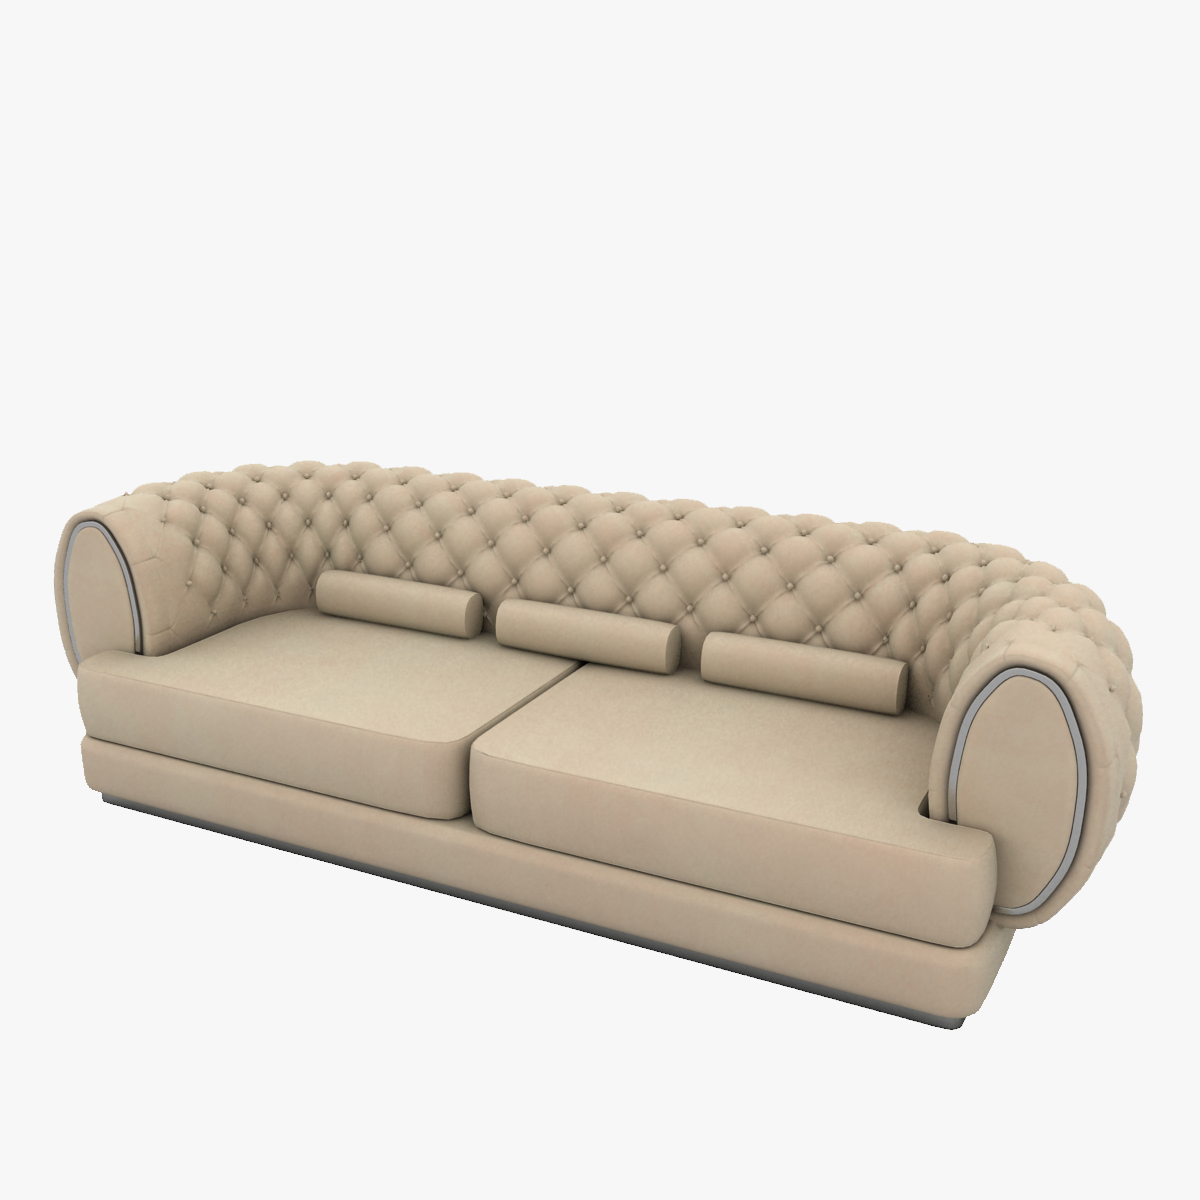 Sofa 3d Model 3ds Max Free Download